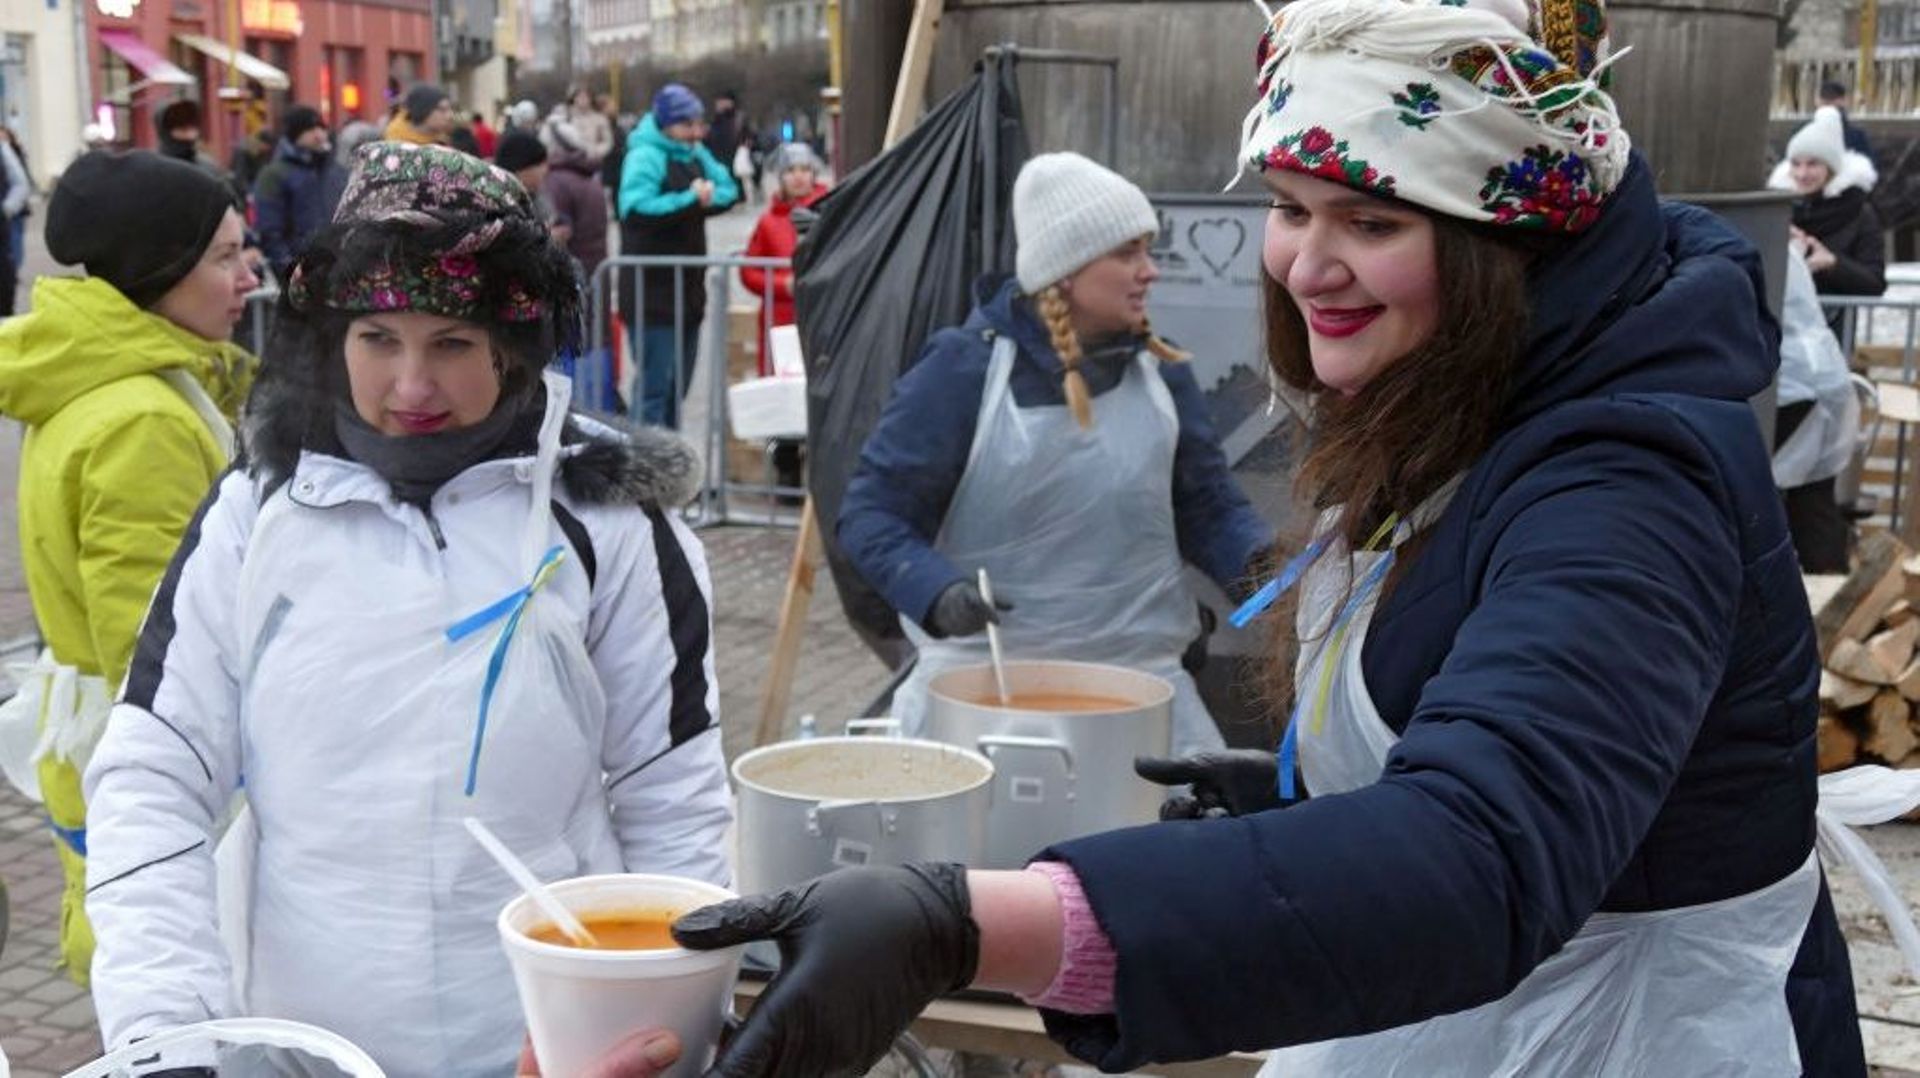 18 décembre, une cuisine de campagne est établie à Vicheva Square dans l’ouest de l’Ukraine pour servir plus de 4000 borscht ukrainien.